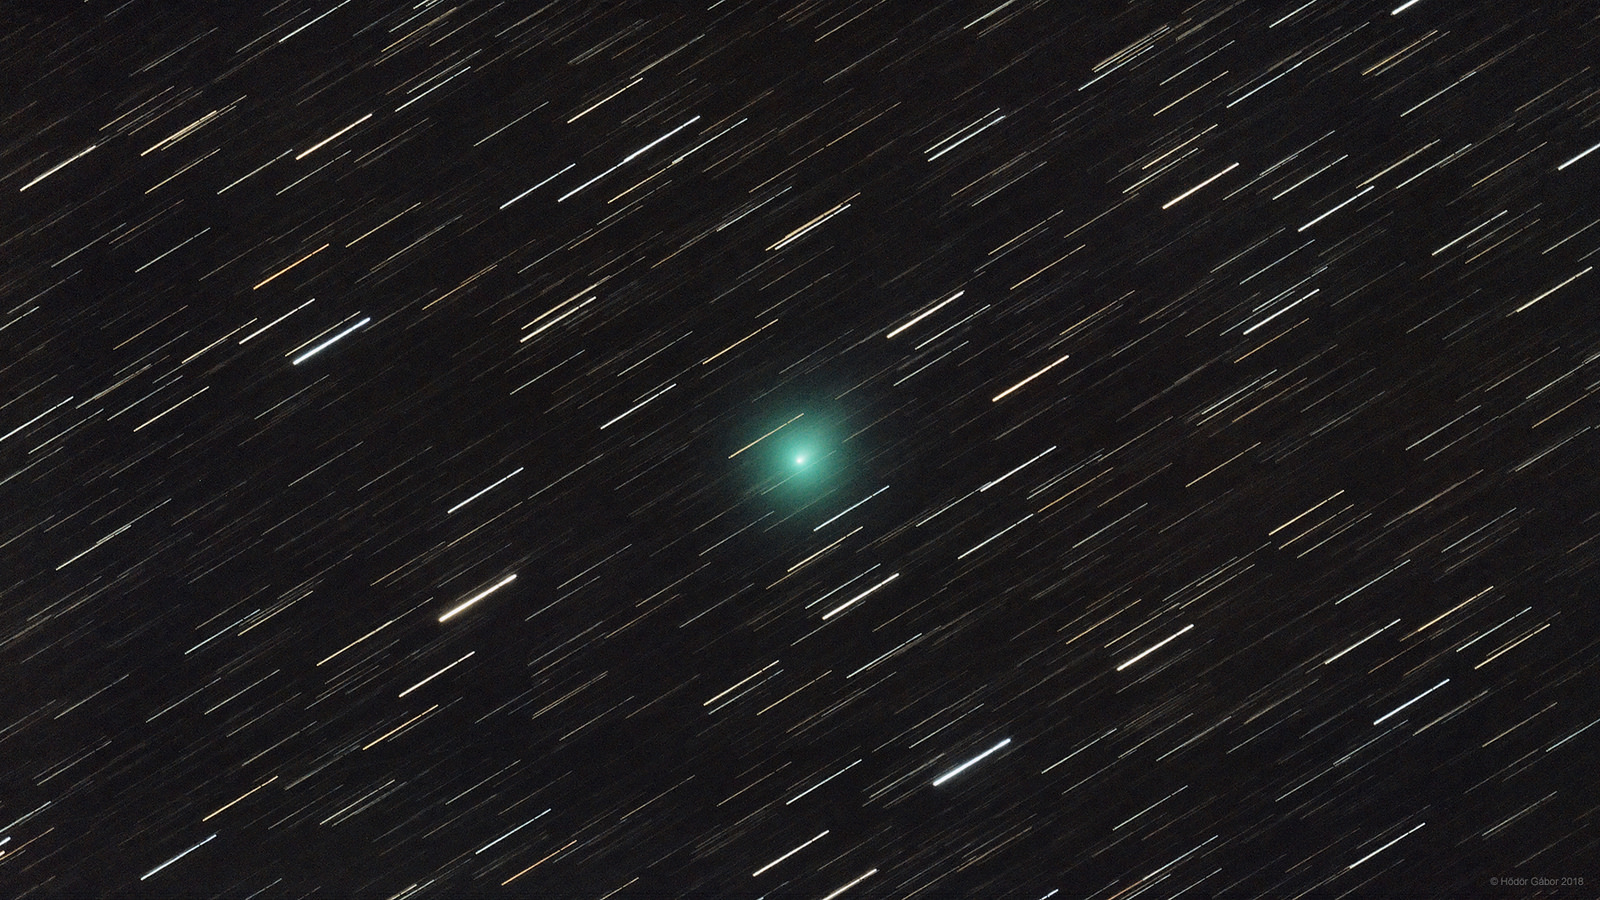 Comet S3 PanSTARRS